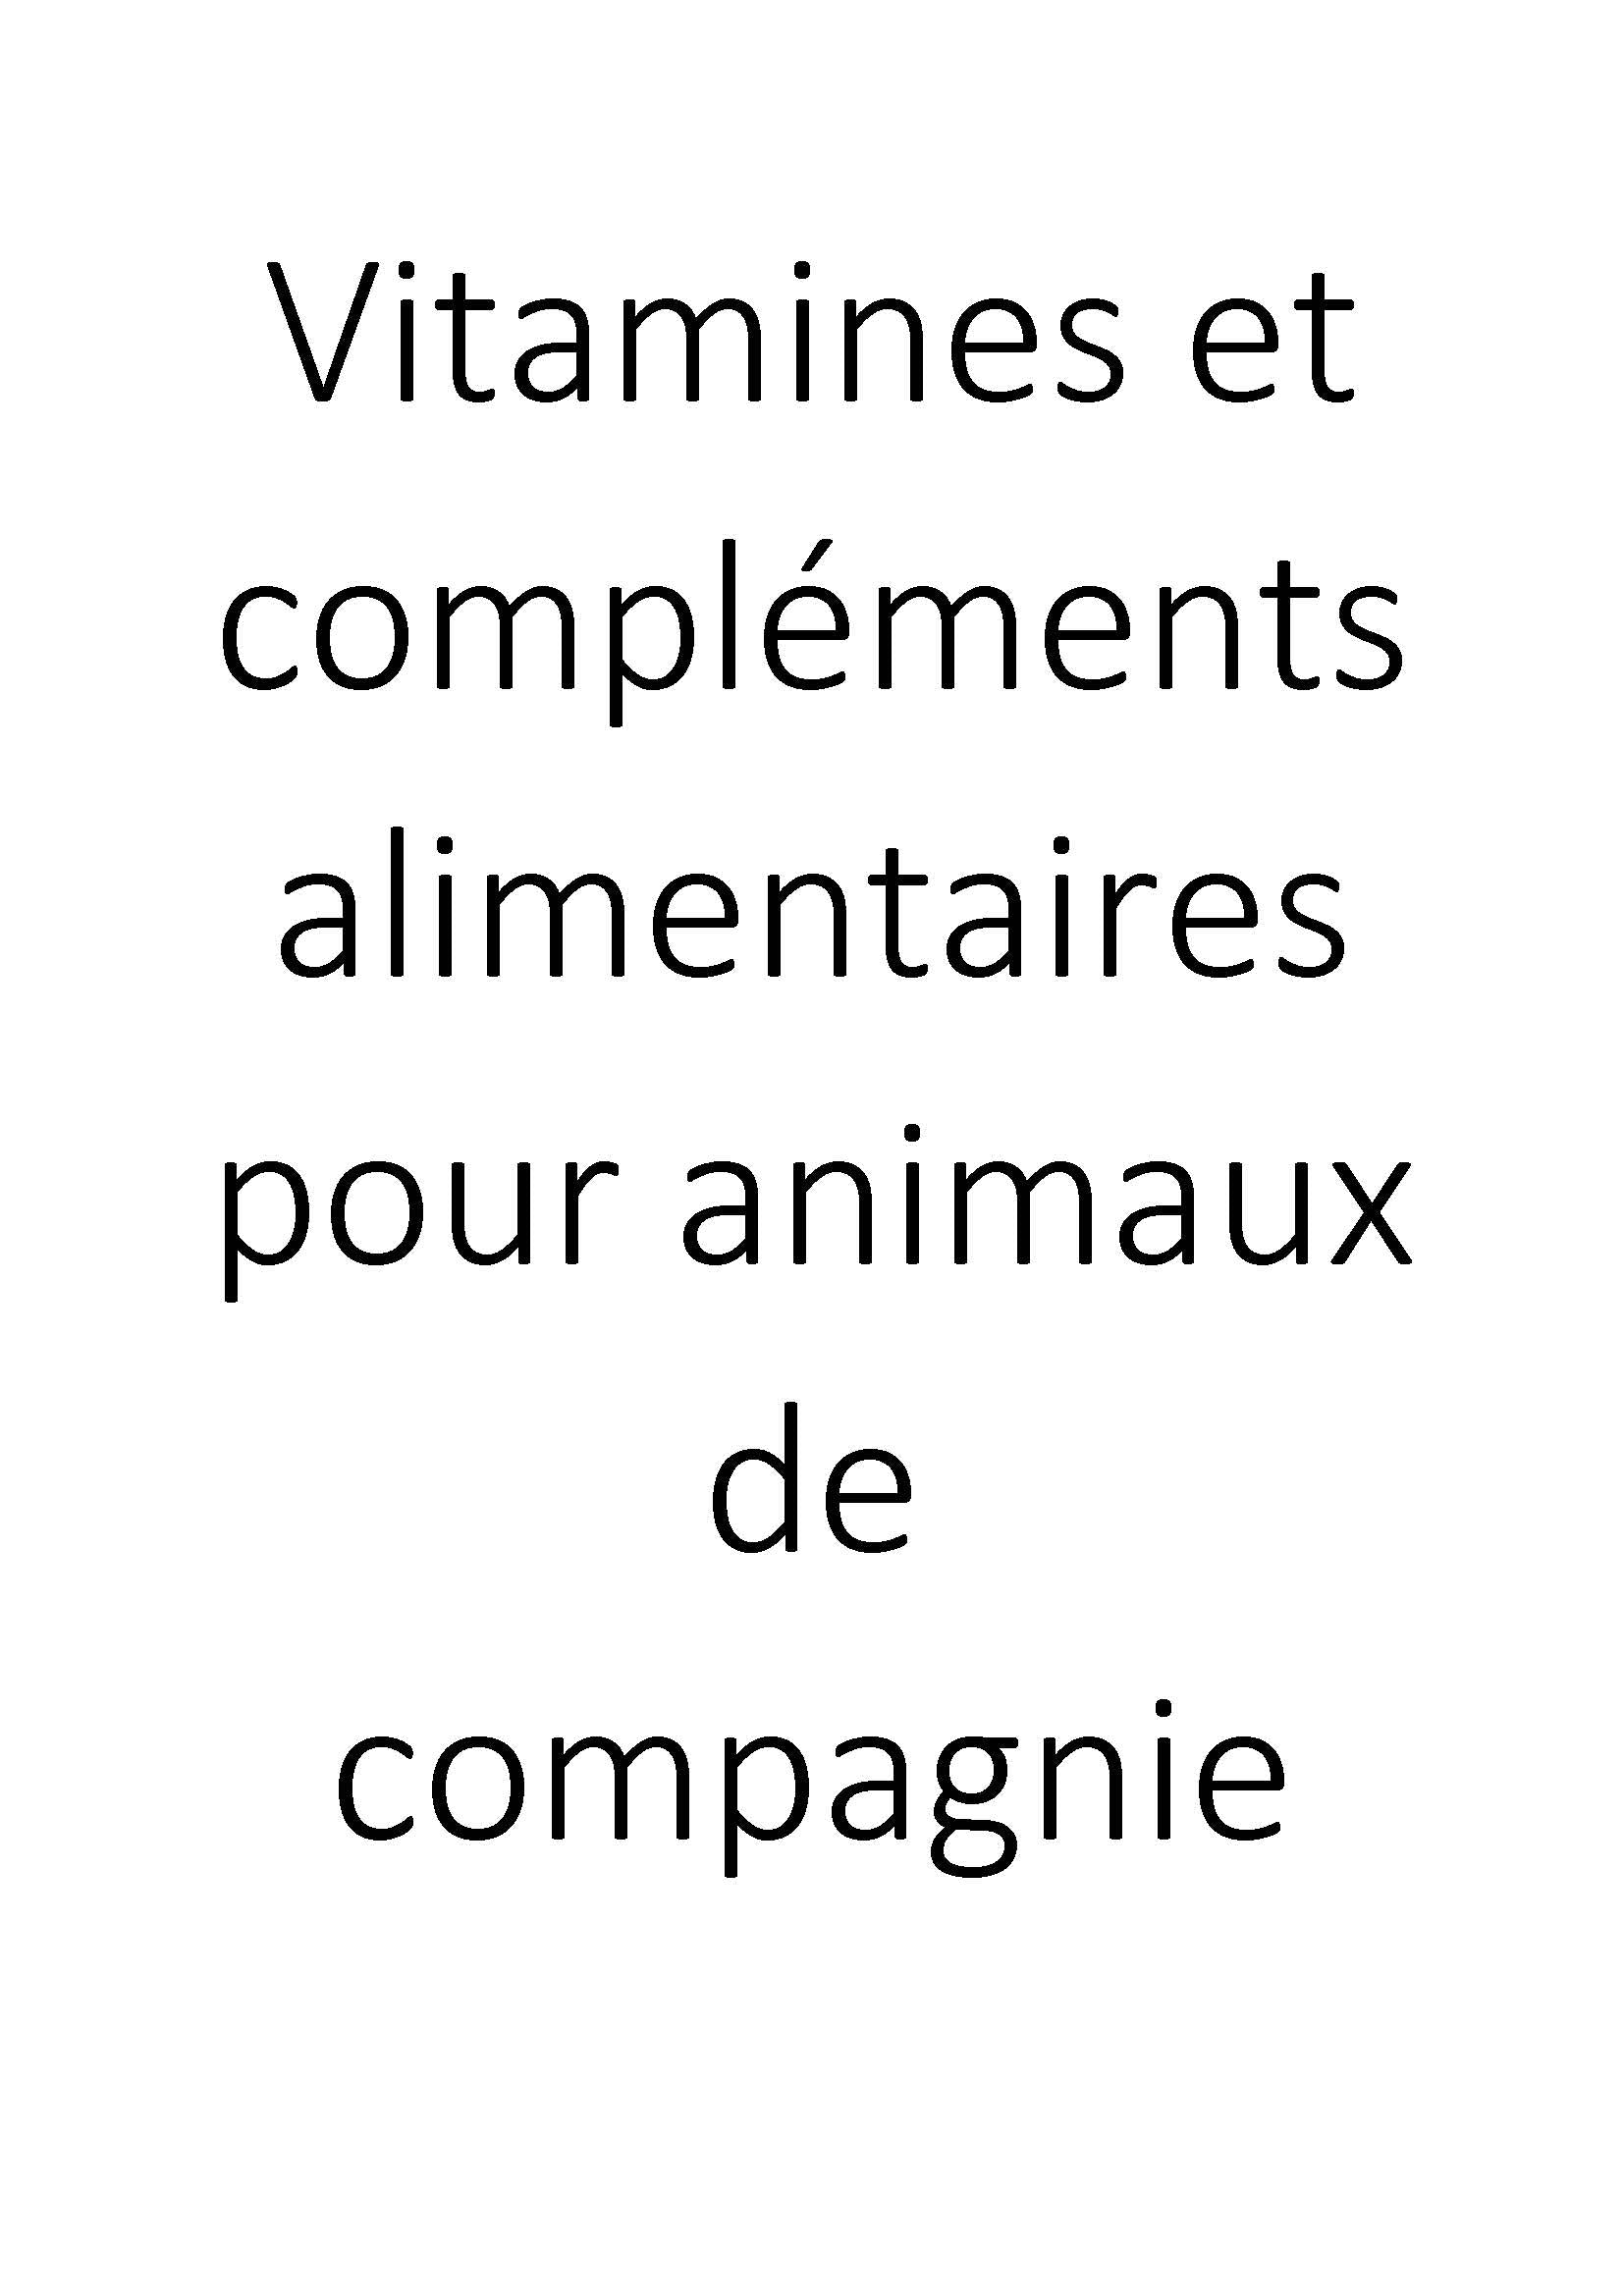 Vitamines et compléments alimentaires pour animaux de compagnie clicktofournisseur.com